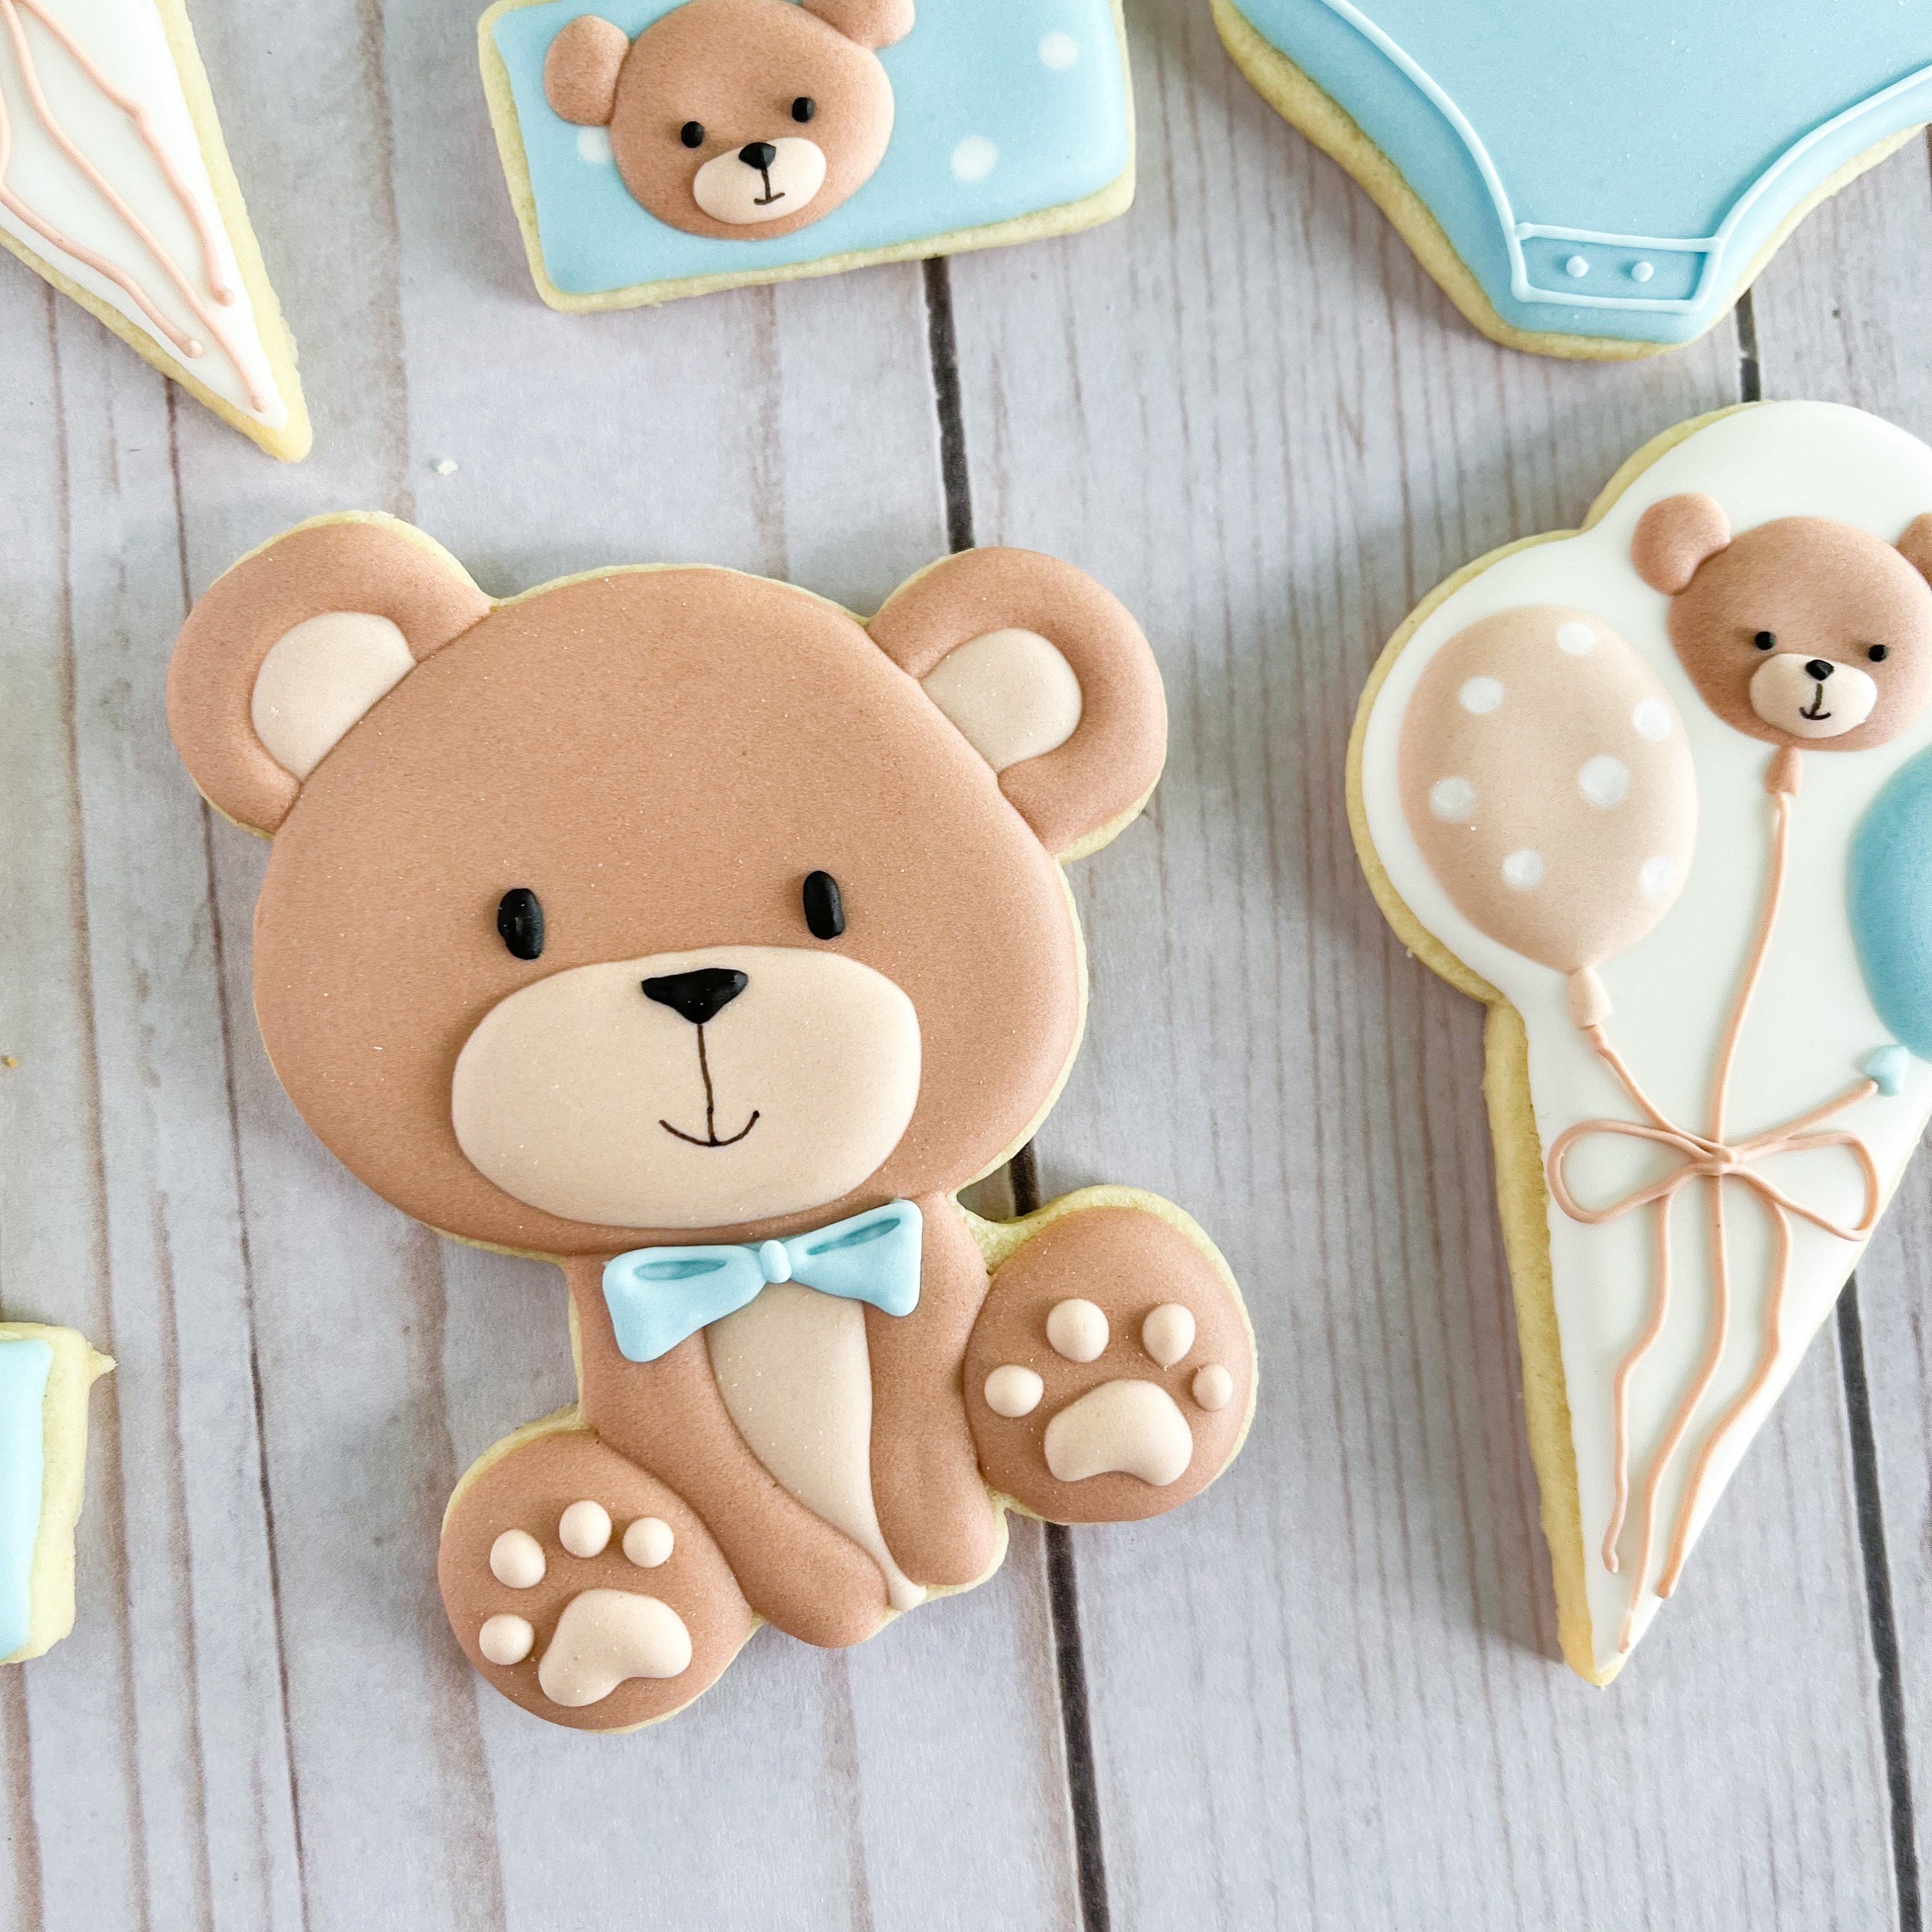 Teddy Bear Baby Cookies Dubai - Entrega de galletas de mantequilla